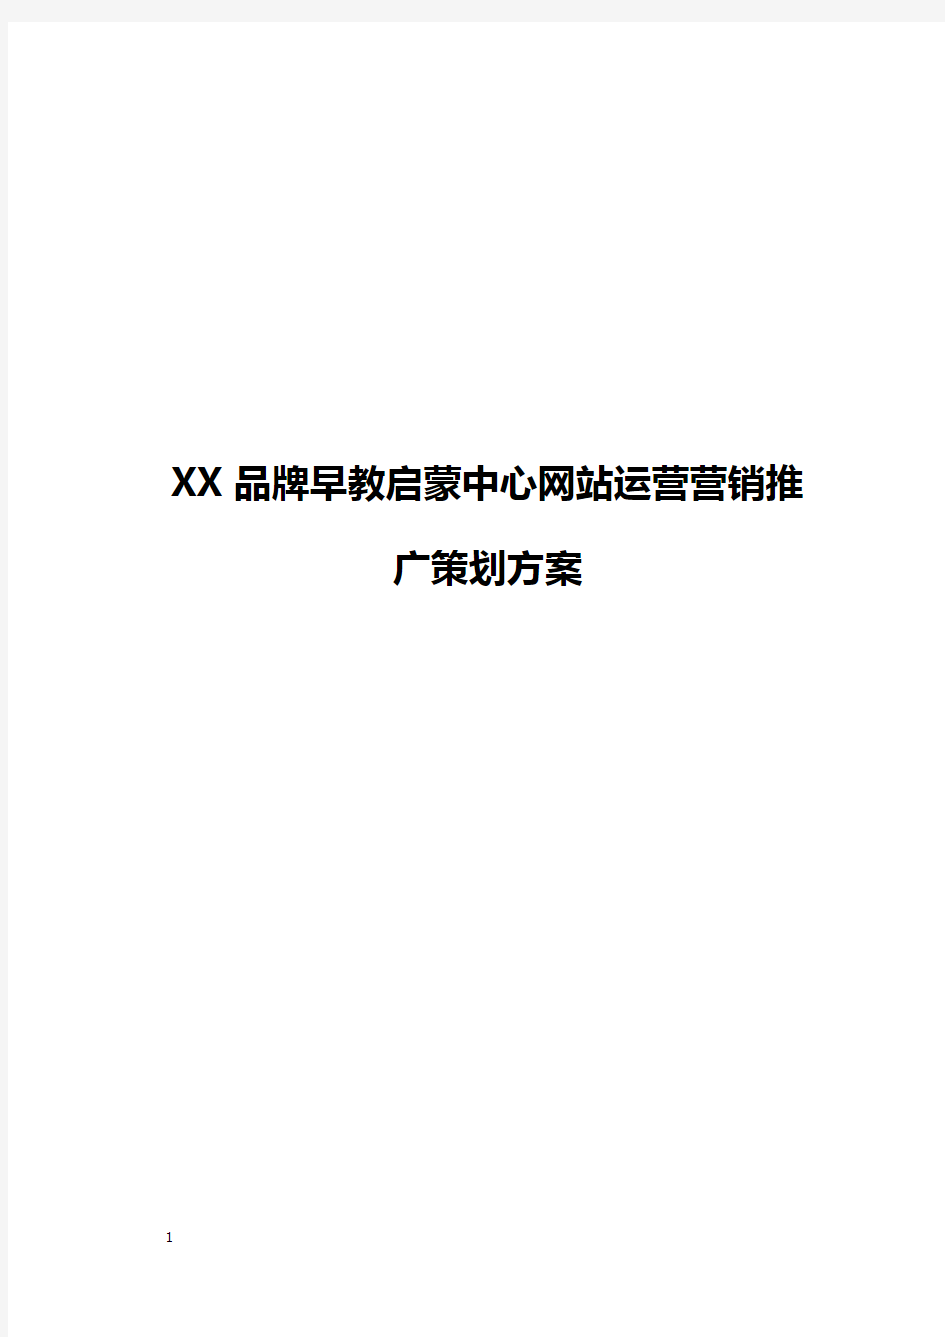 【精编】XX品牌早教启蒙中心网站运营营销推广策划方案